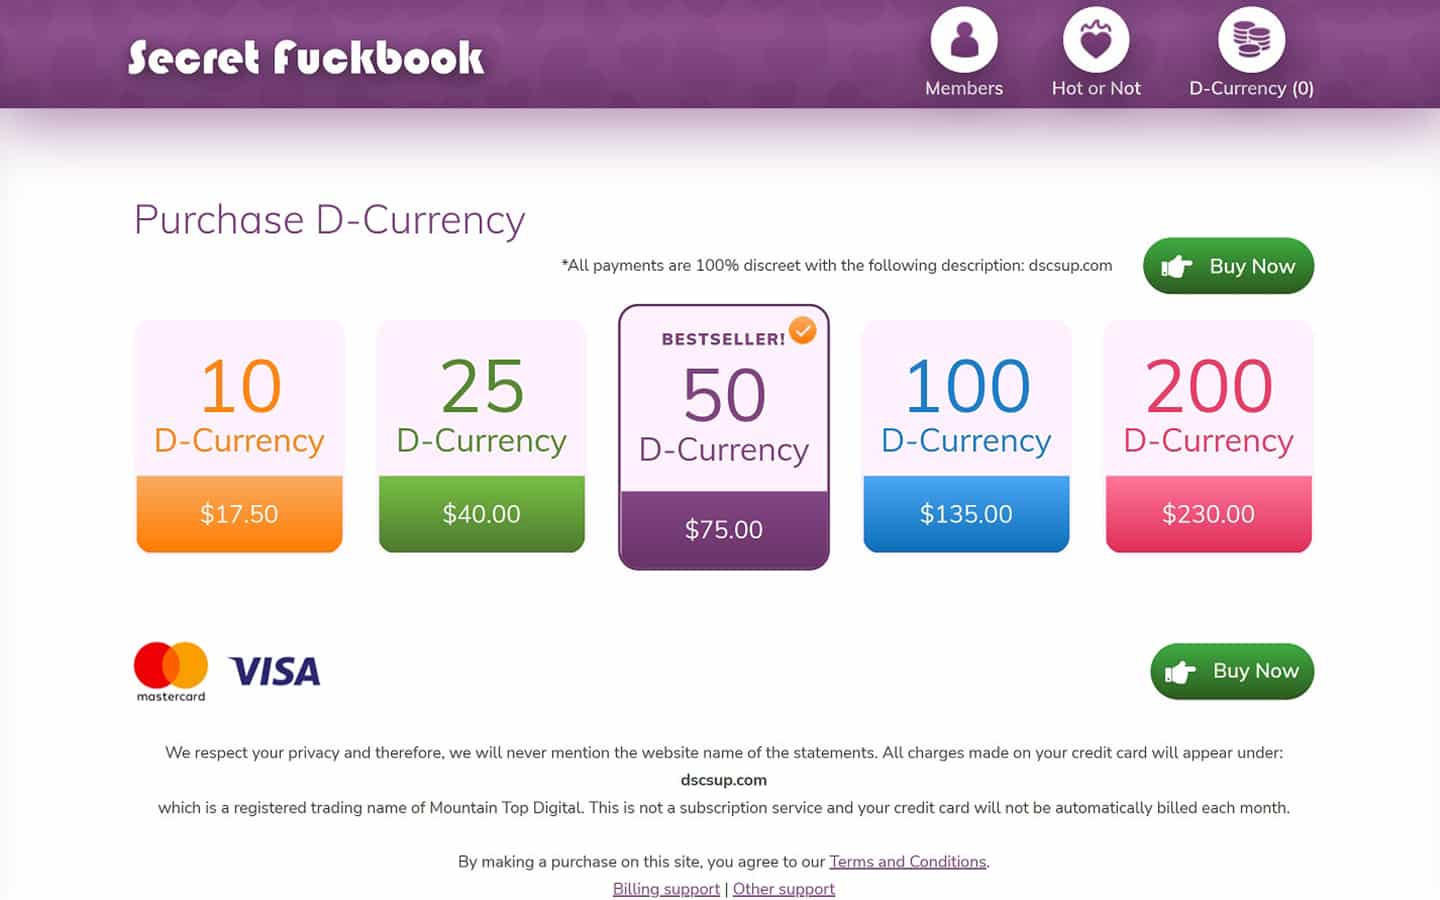 Review SecretFuckBook.com payment